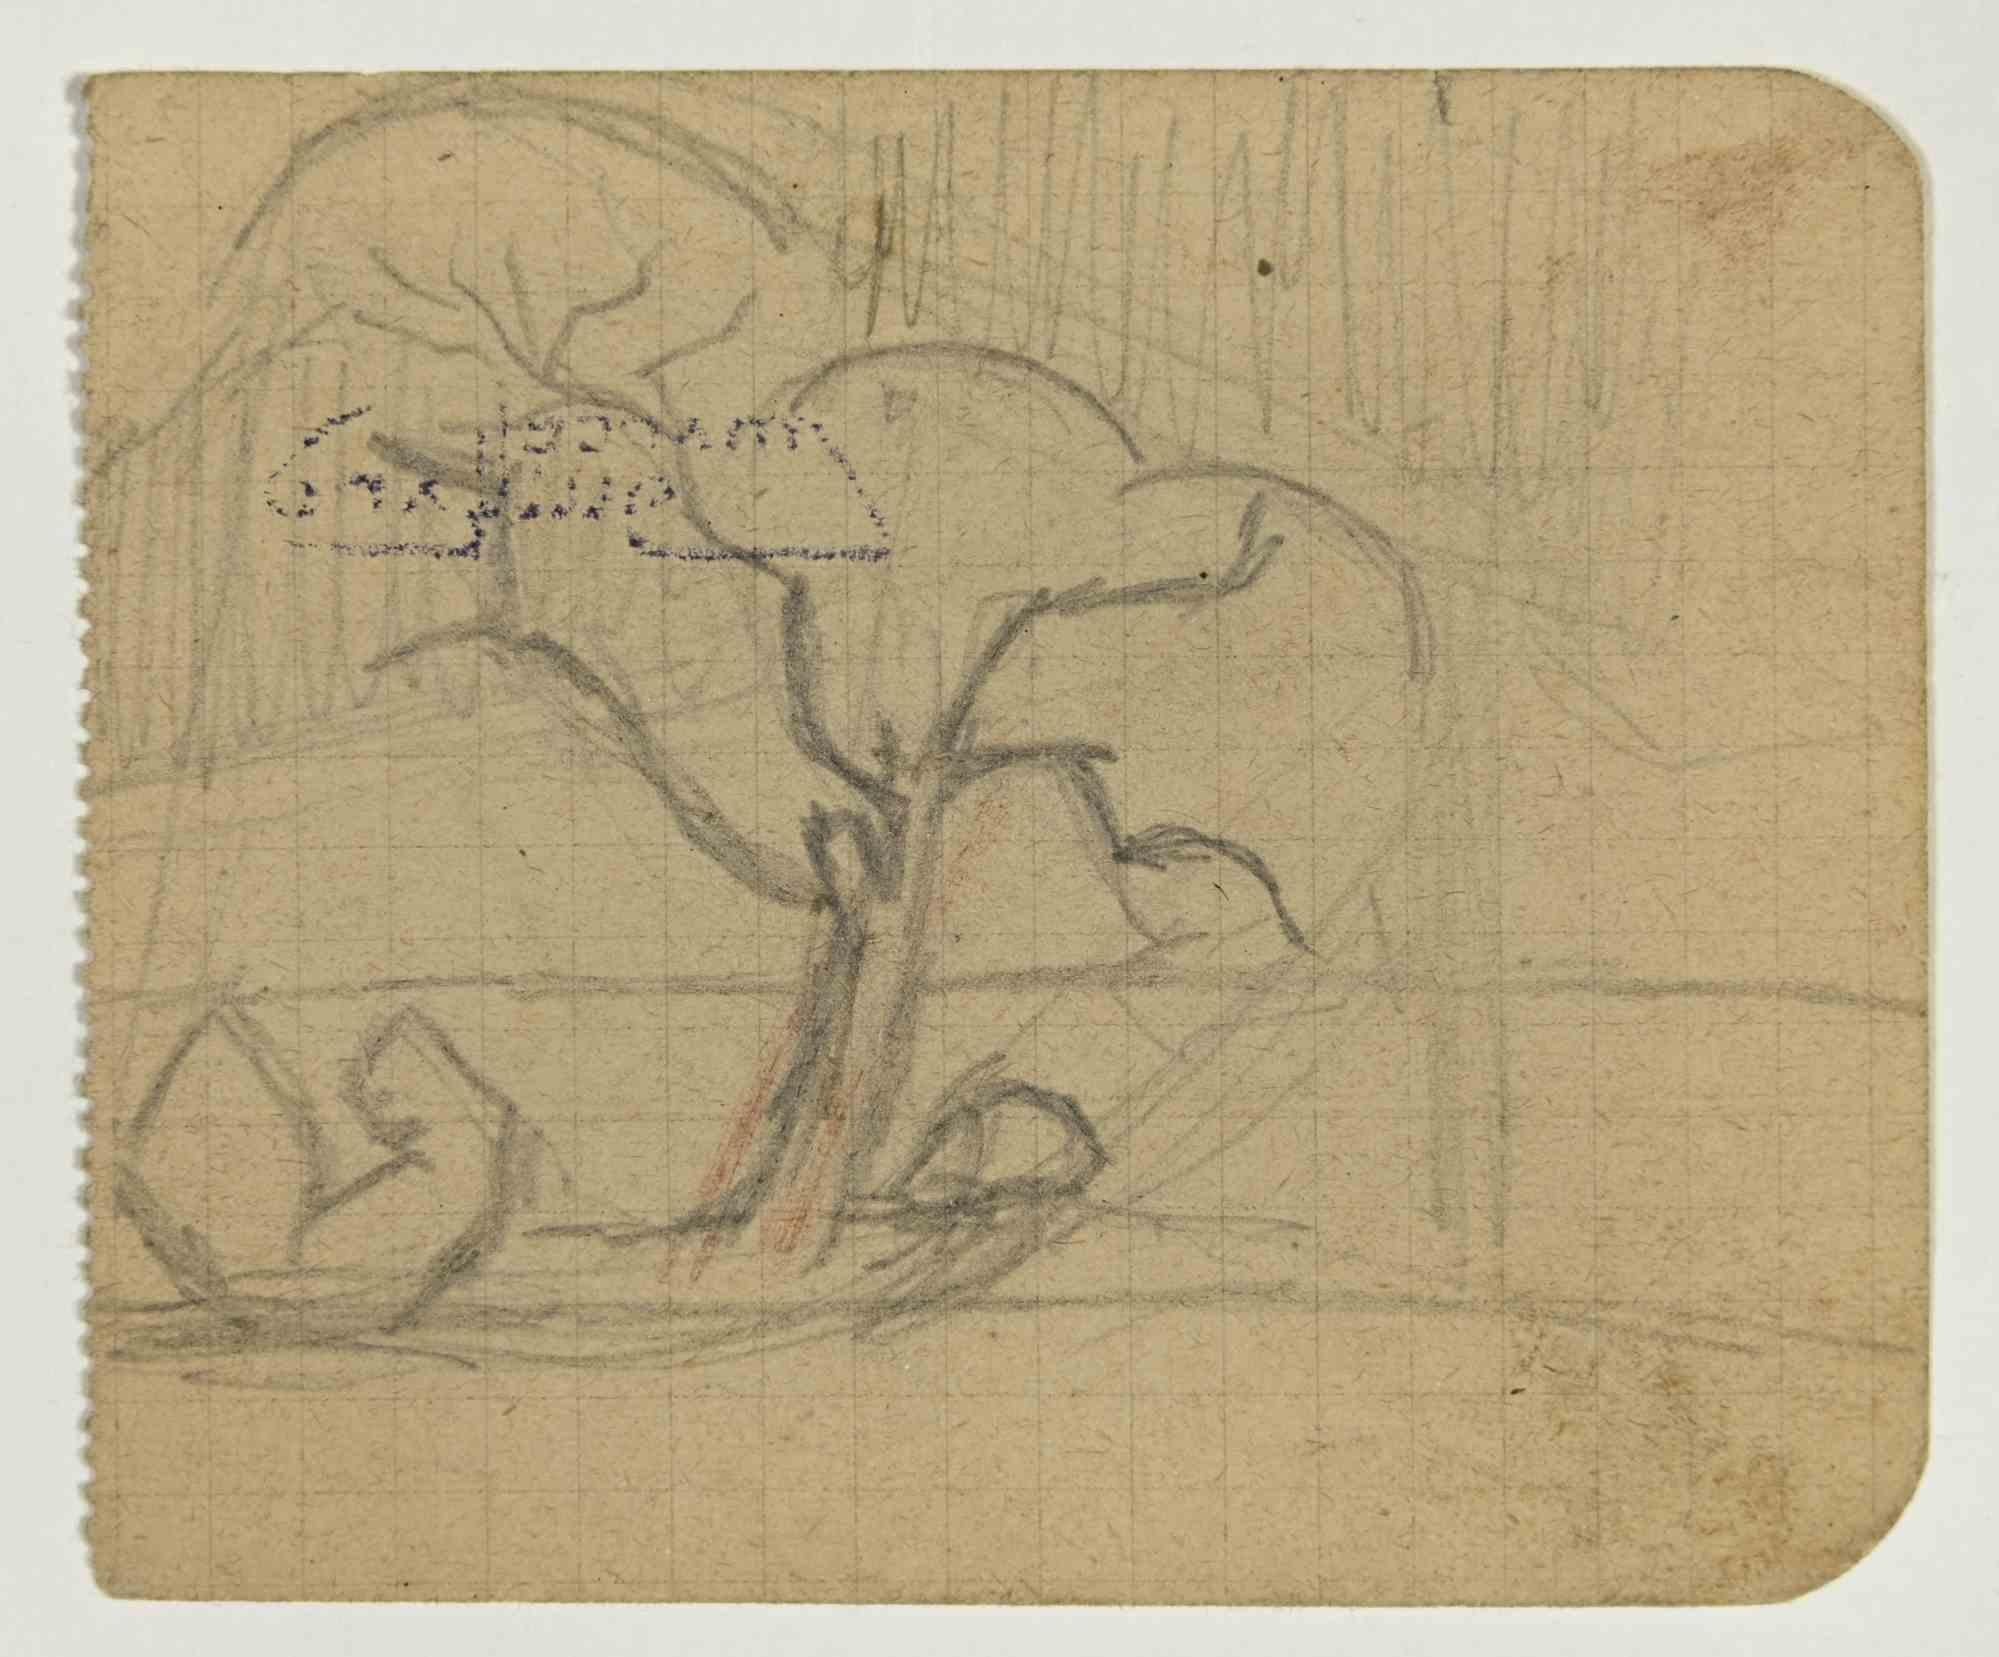 Baum ist eine Bleistiftzeichnung von Marcel Guillard (1896-?) aus dem frühen 20. Jahrhundert.

